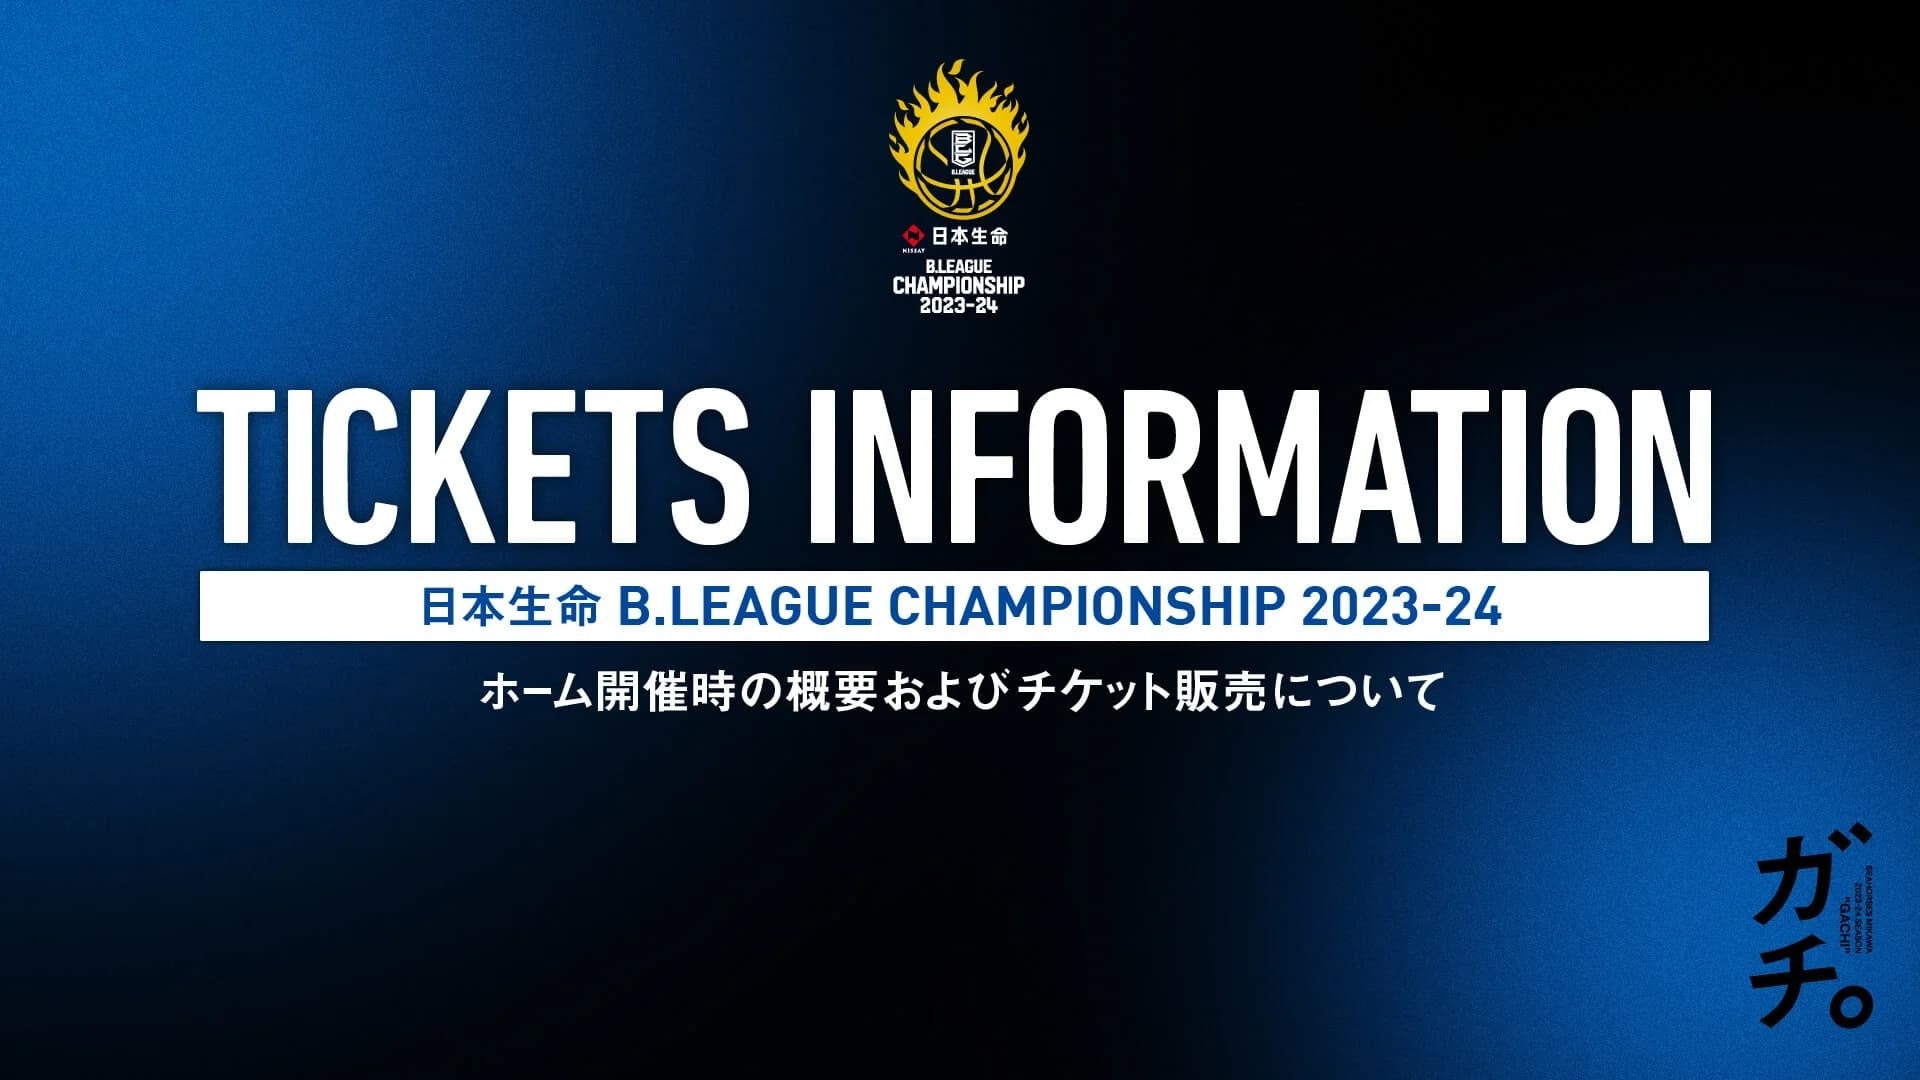 日本生命 B.LEAGUE CHAMPIONSHIP2023-24 ホーム開催時の概要およびチケット販売について